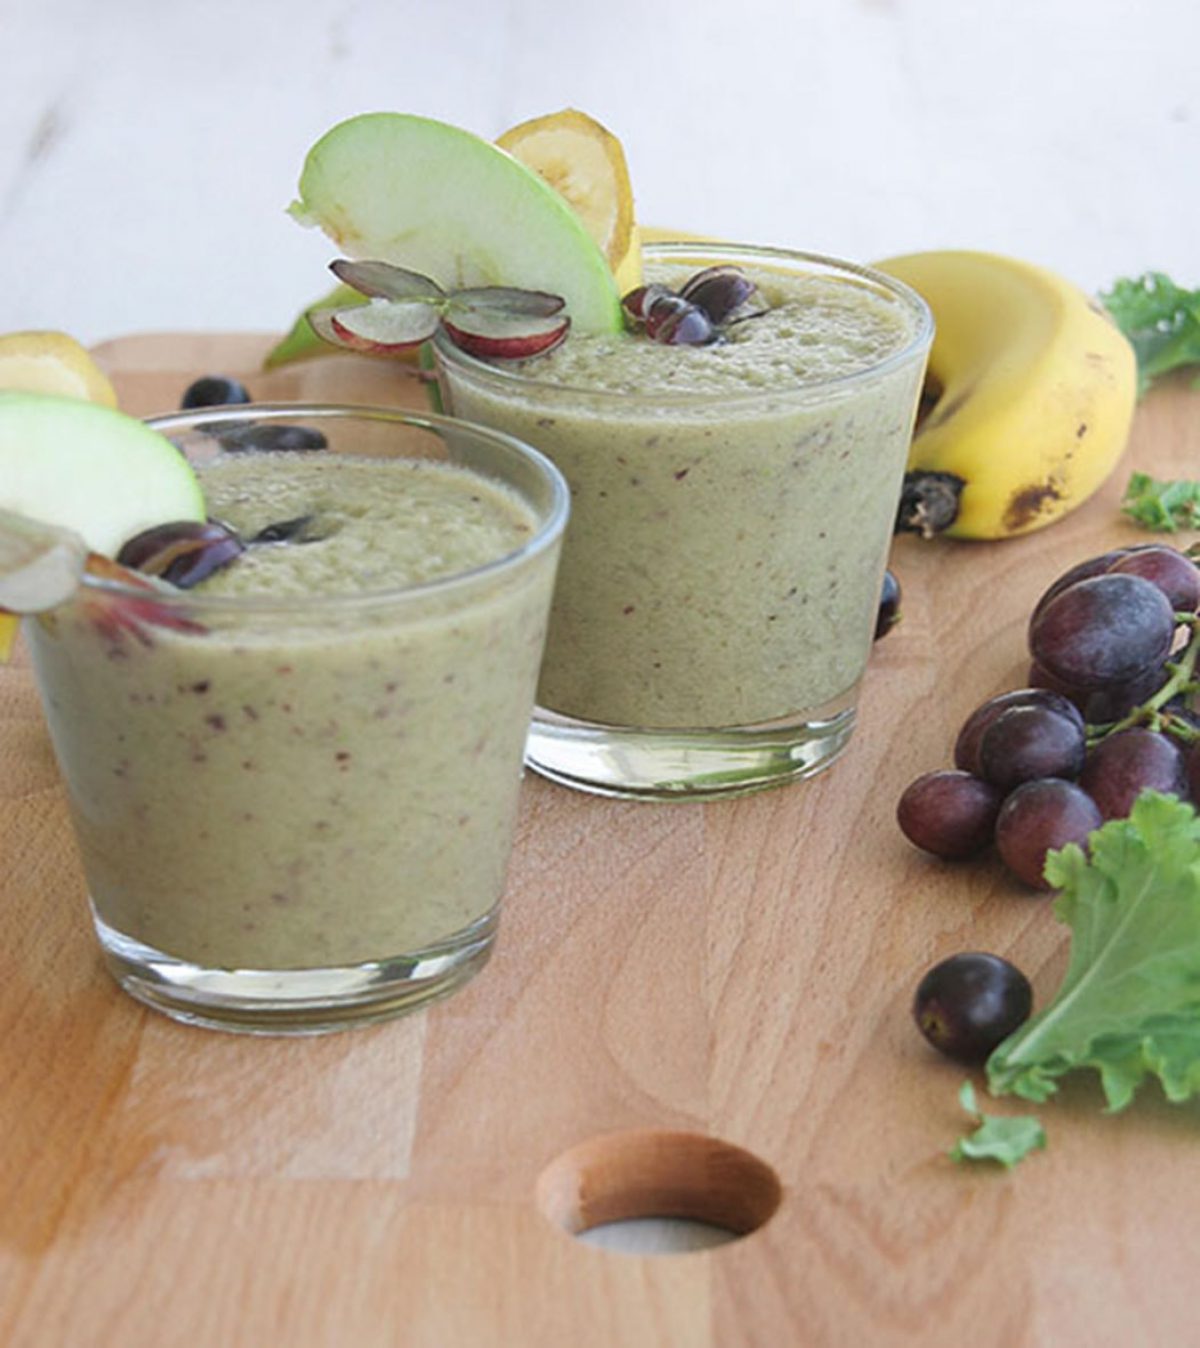 Apple, kale & grape detox smoothie  - Delicious & Nutritious